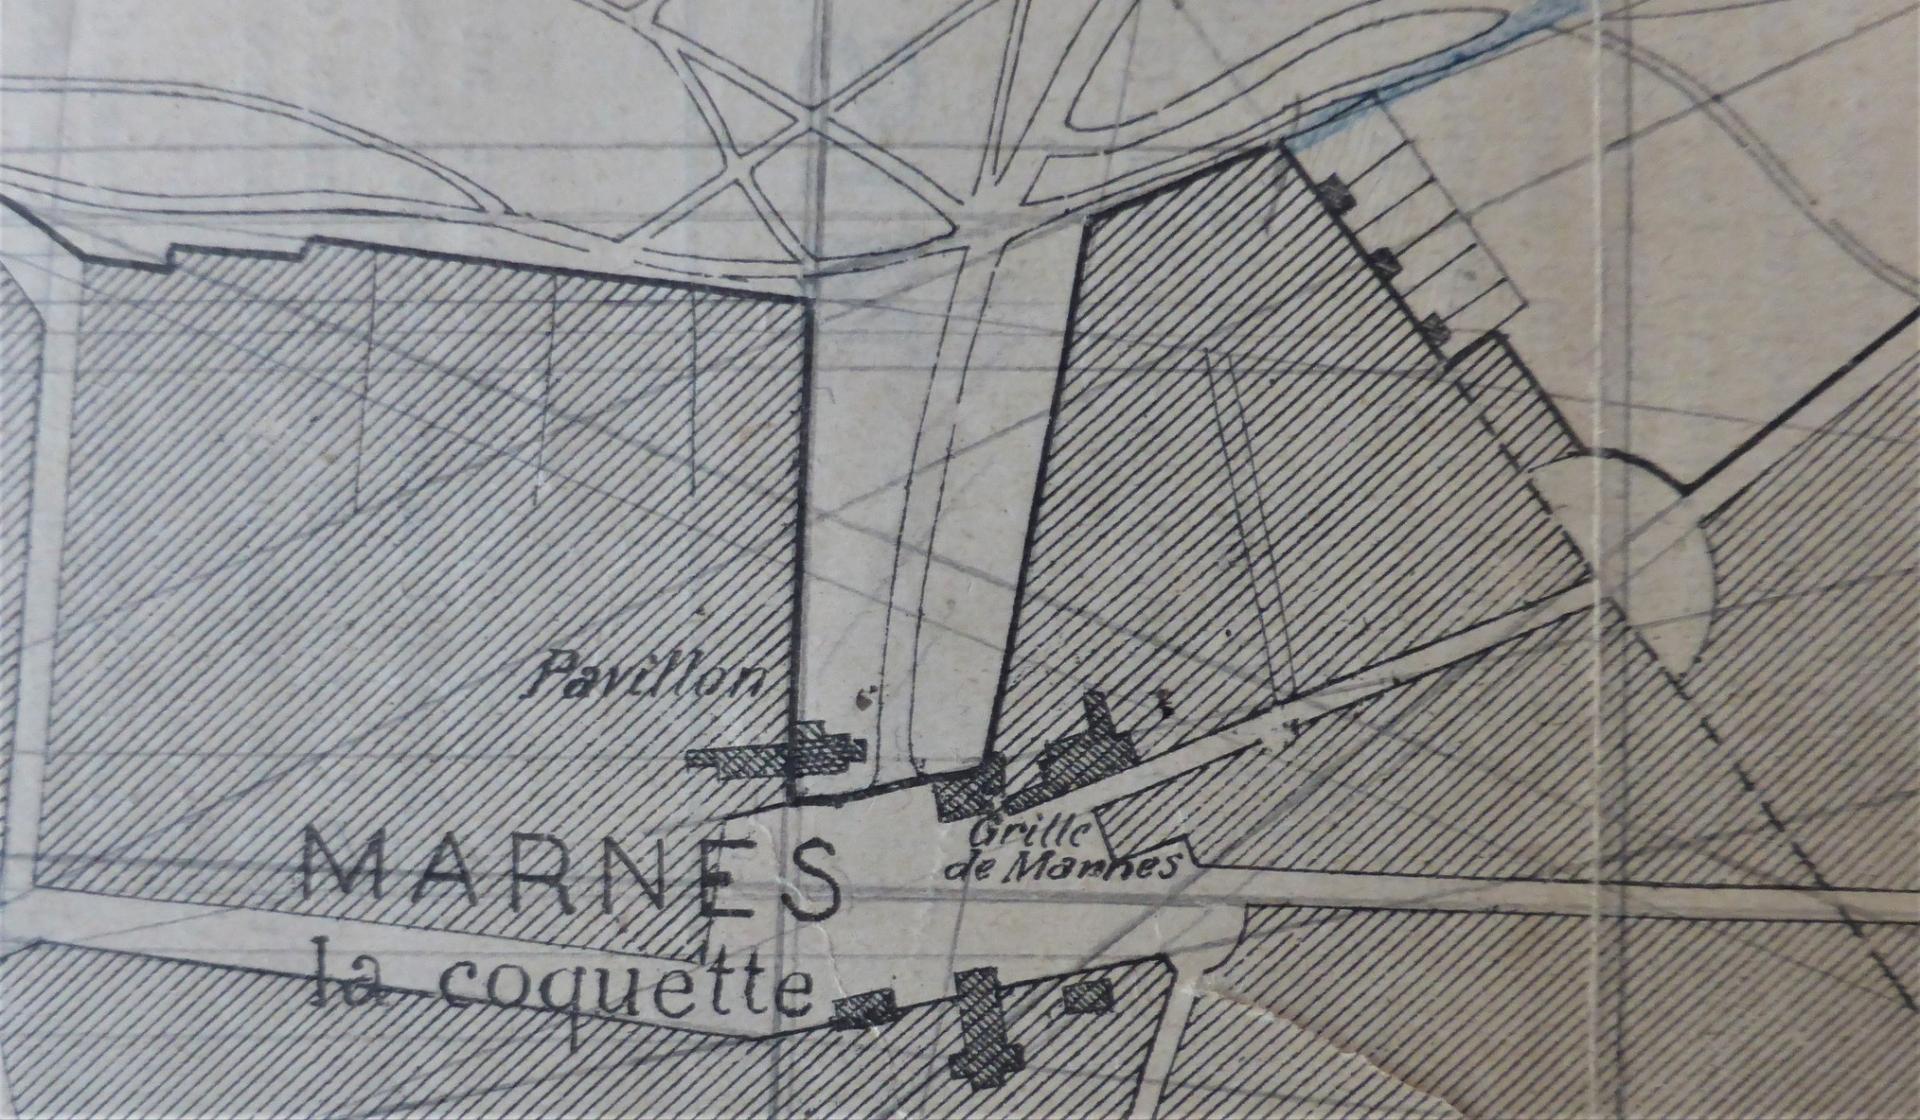 Entrée du domaine à Marnes-la-Coquette, détail du plan XIXe. Eglise Ste-Eugénie en vis-à-vis, ©Ph.Cachau